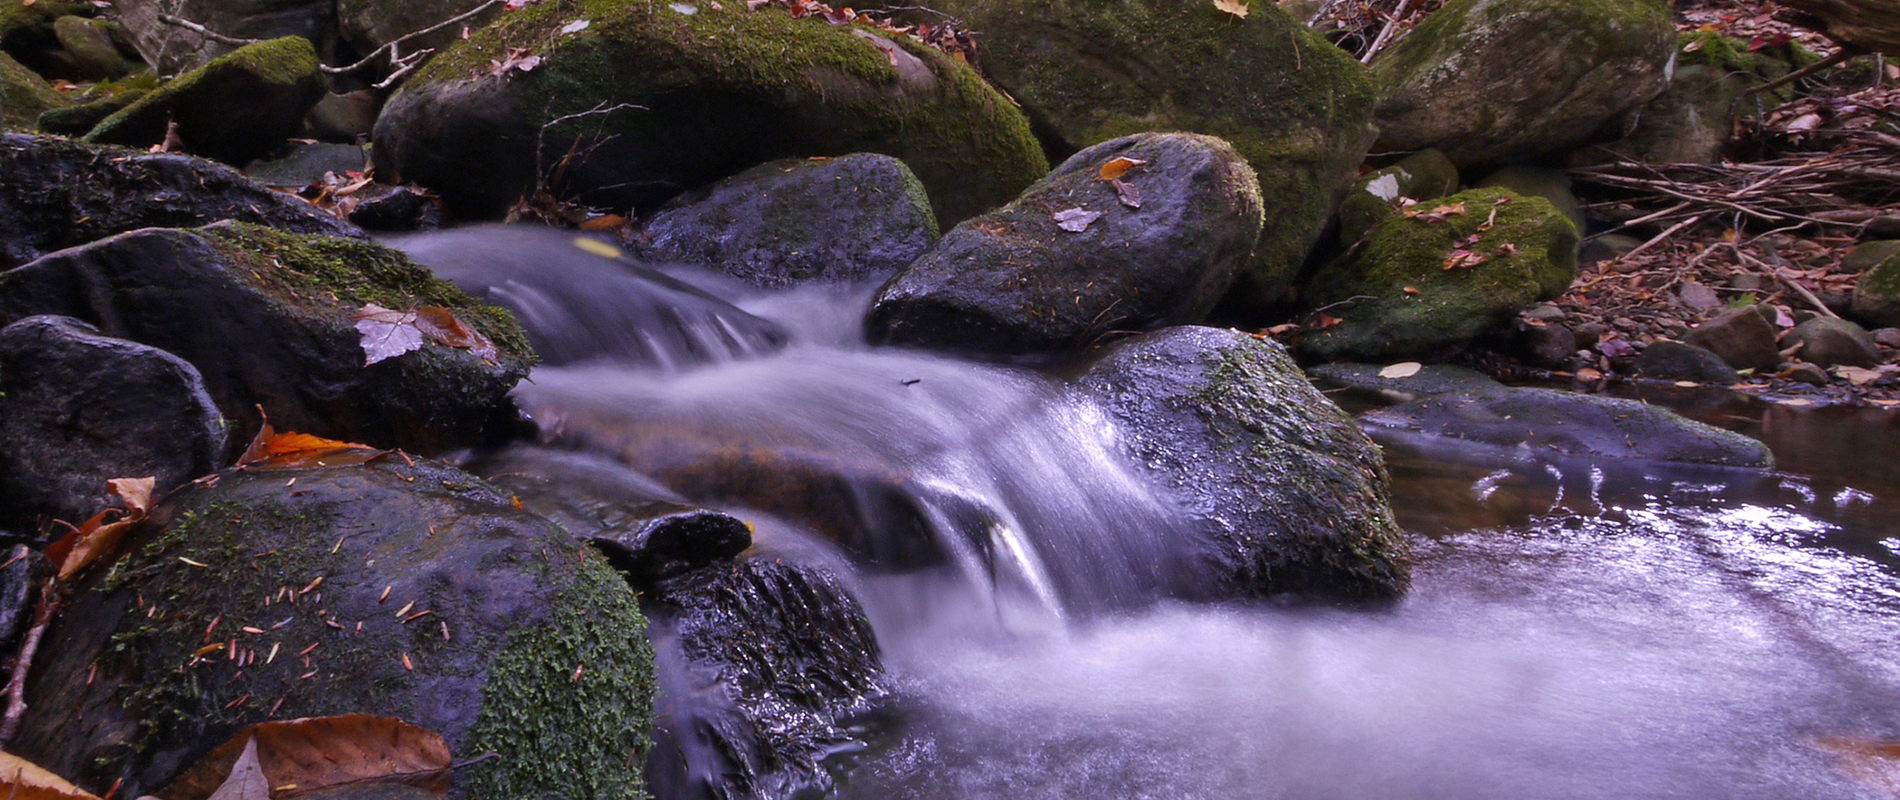 Flowing water down a cascade of rocks.